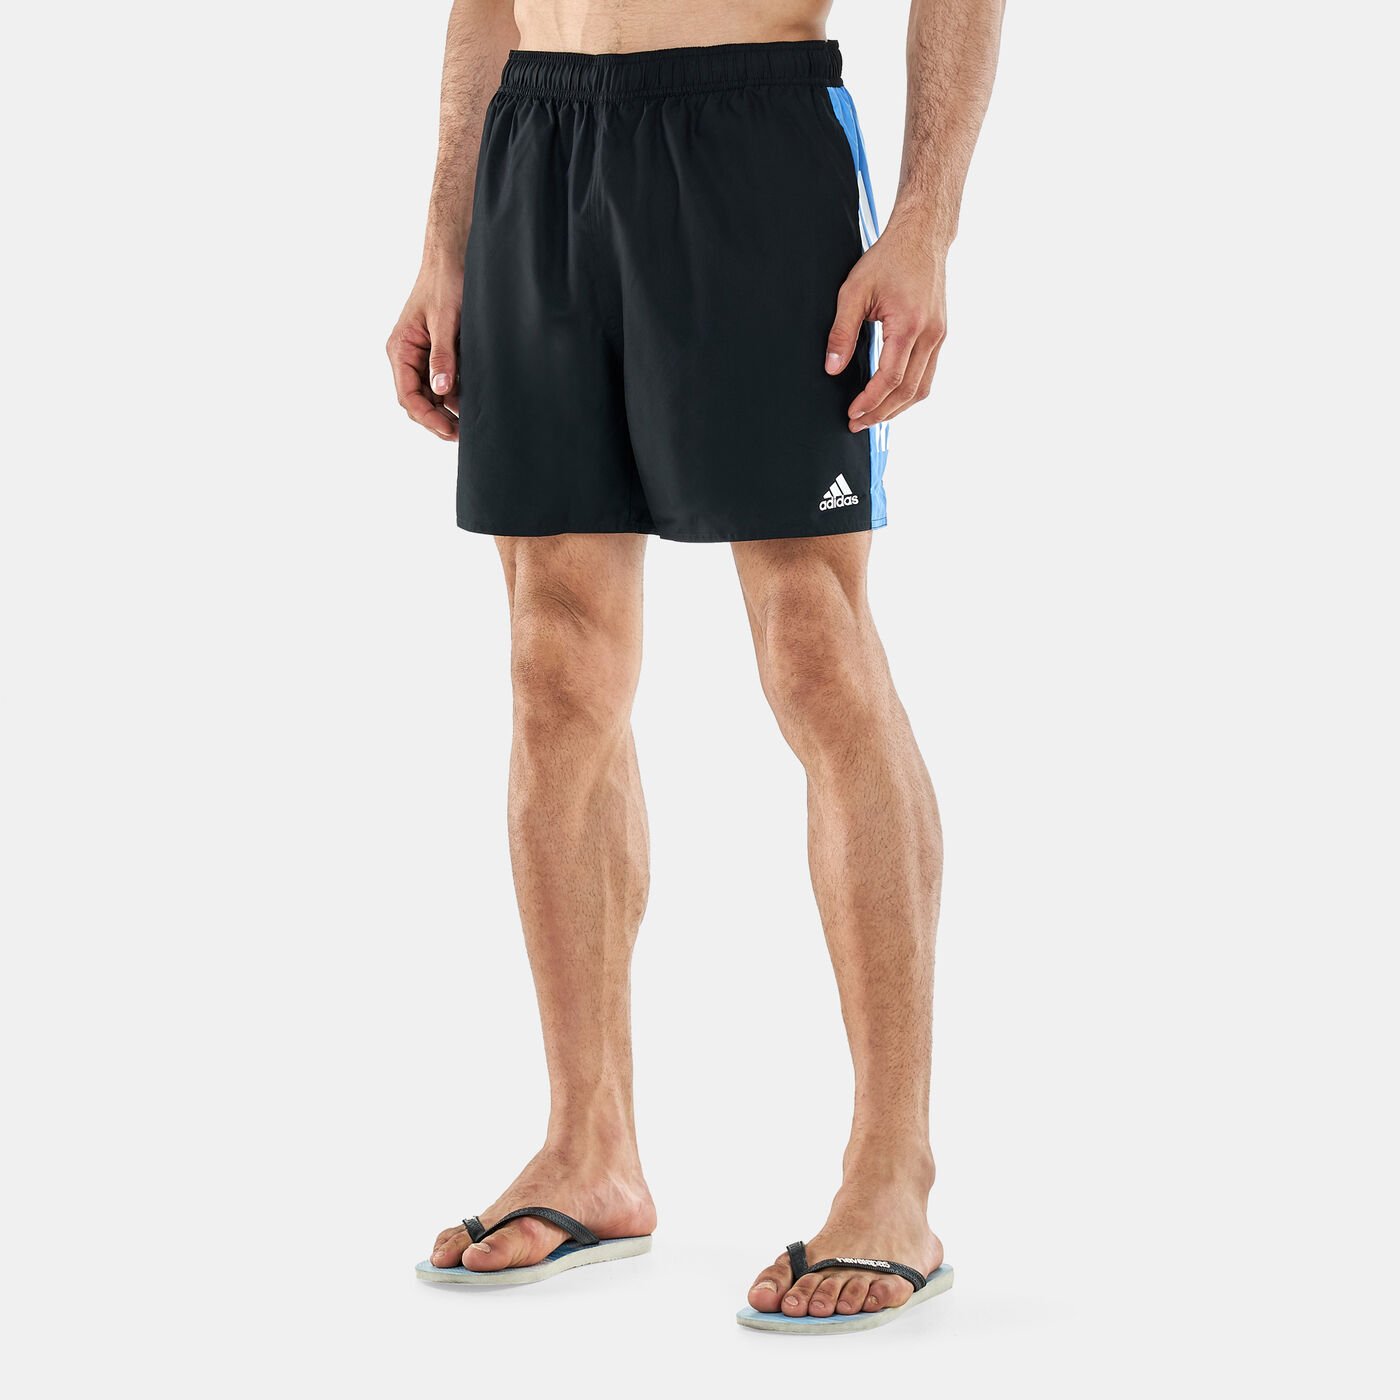 Men's Colourblock 3-Stripes Swimming Shorts